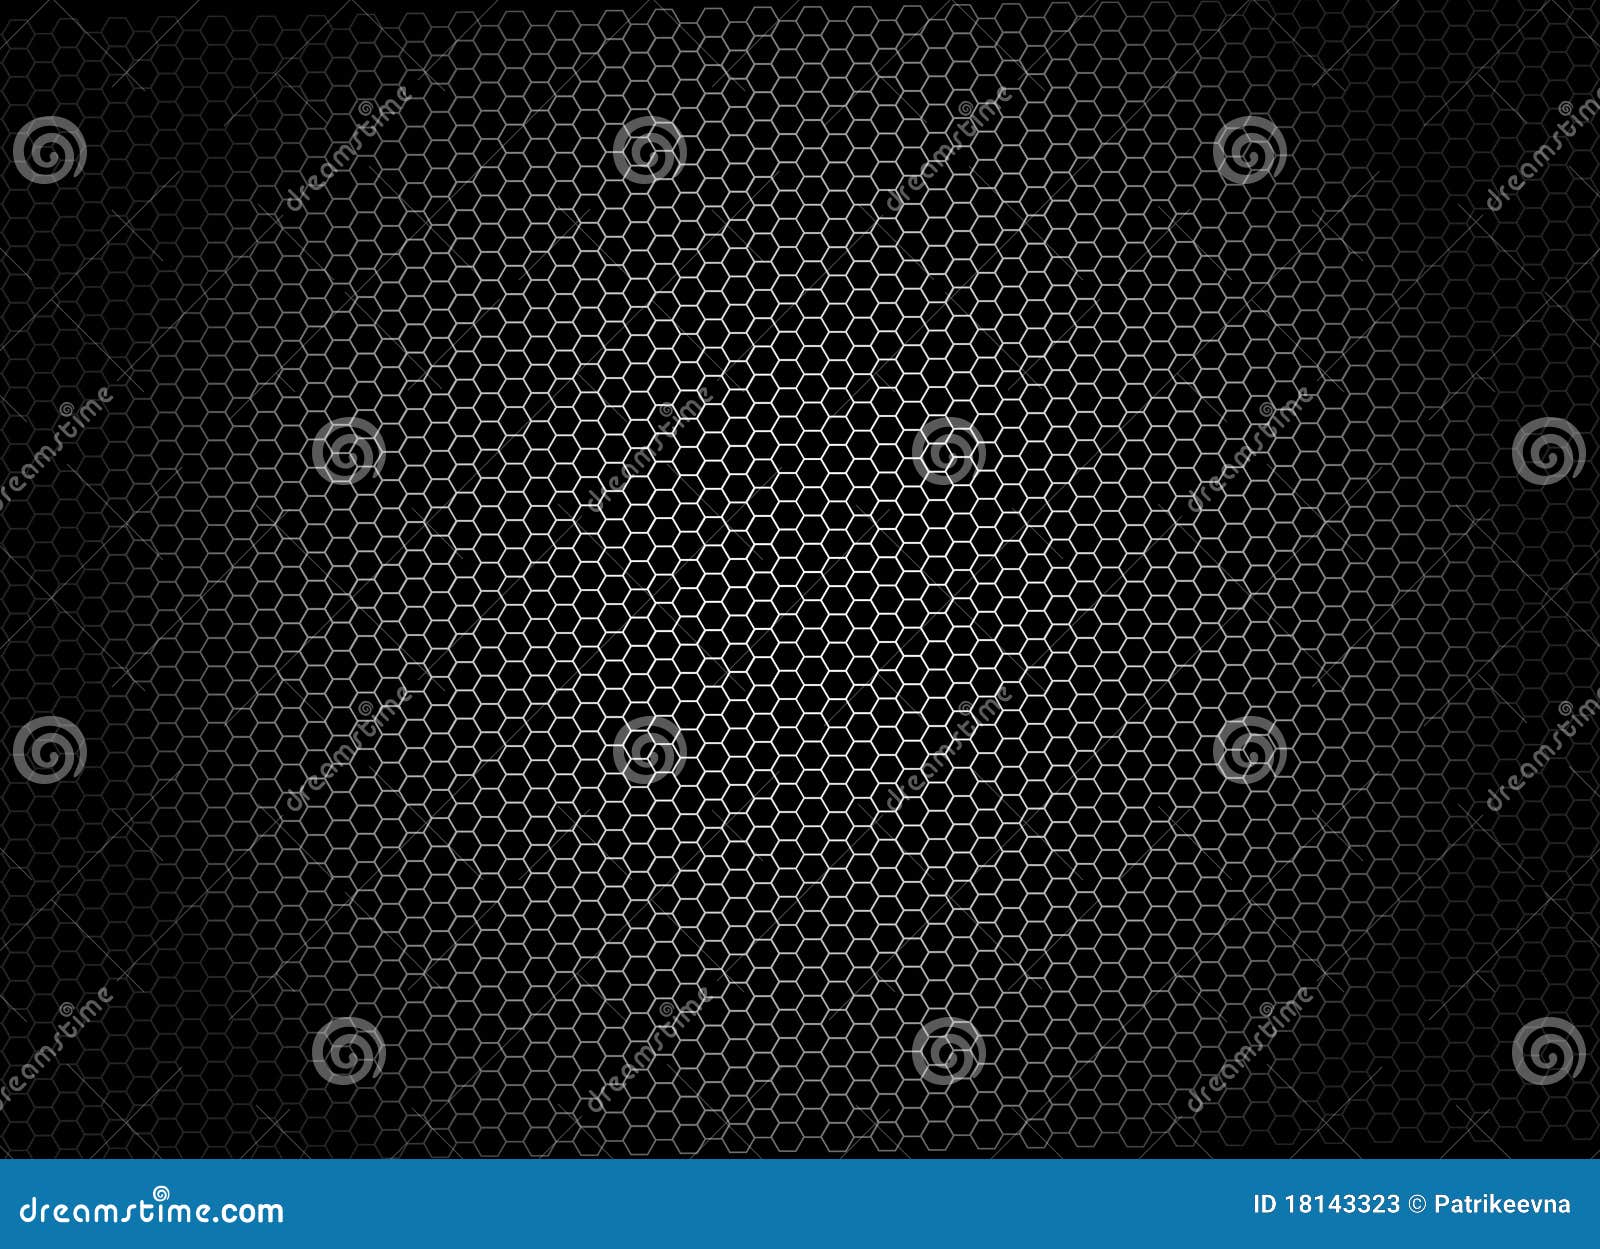 Abstrakter Hintergrund mit Hexagonen. Dunkler abstrakter Hintergrund mit einem Netz gebildet von den Hexagonen